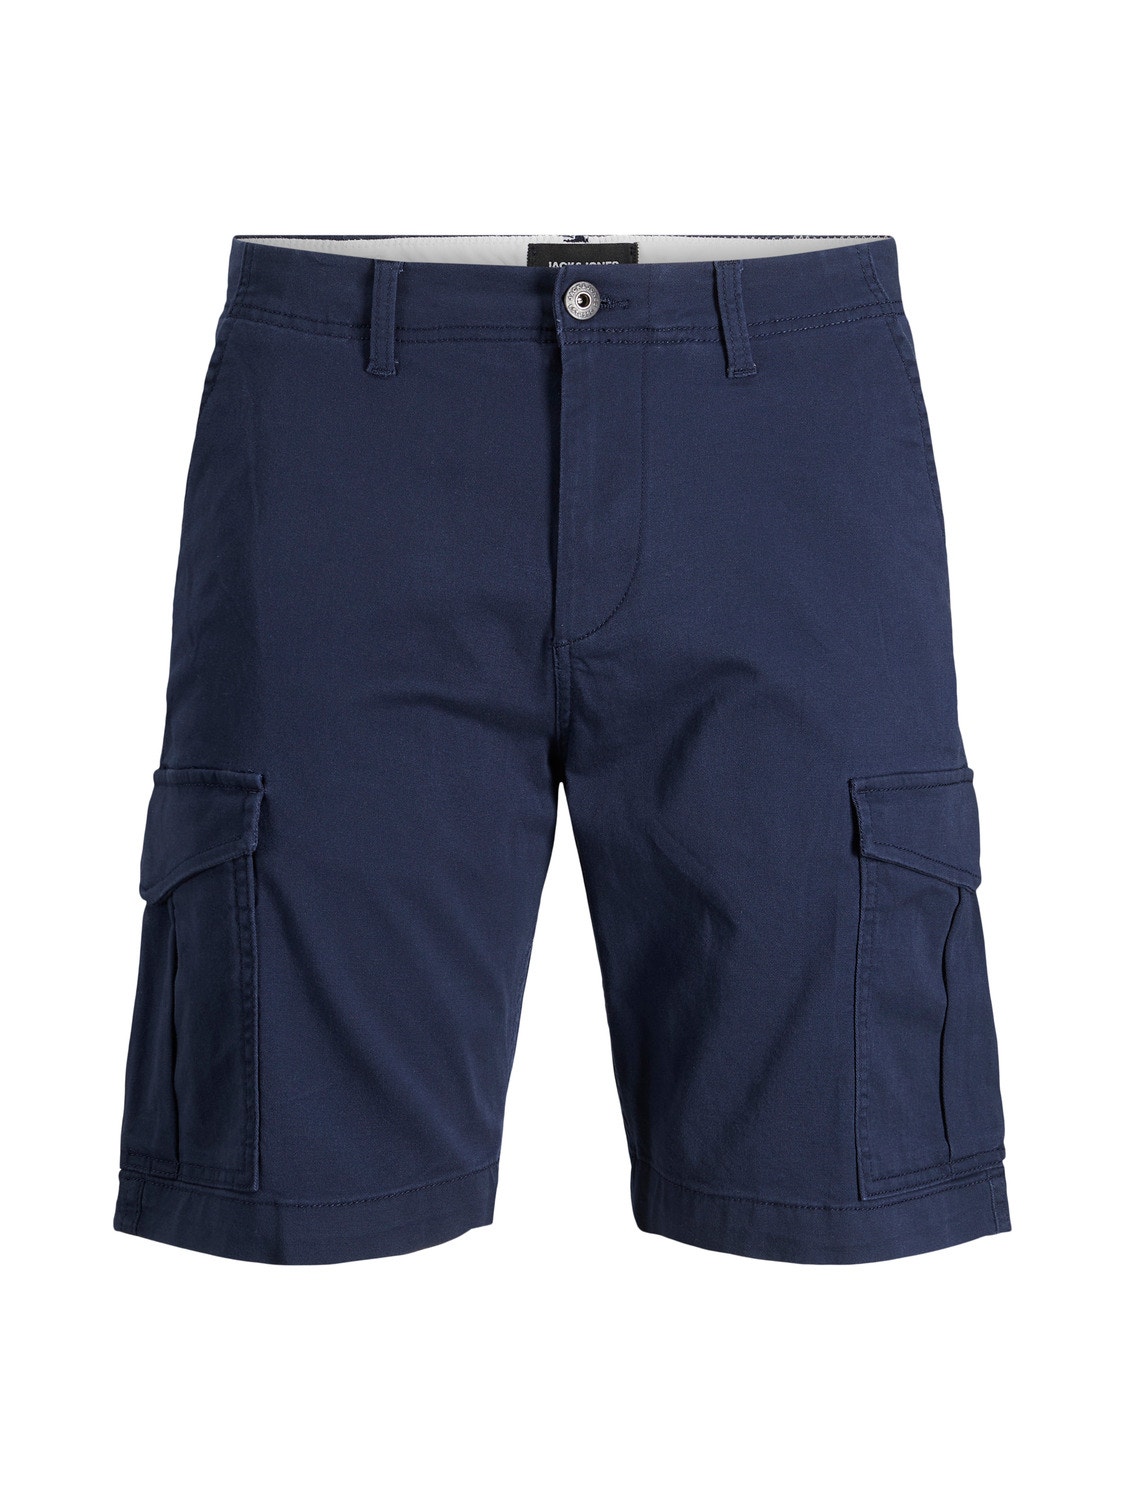 Jack & Jones Cargo fit Cargo Shorts Für jungs -Navy Blazer - 12182856